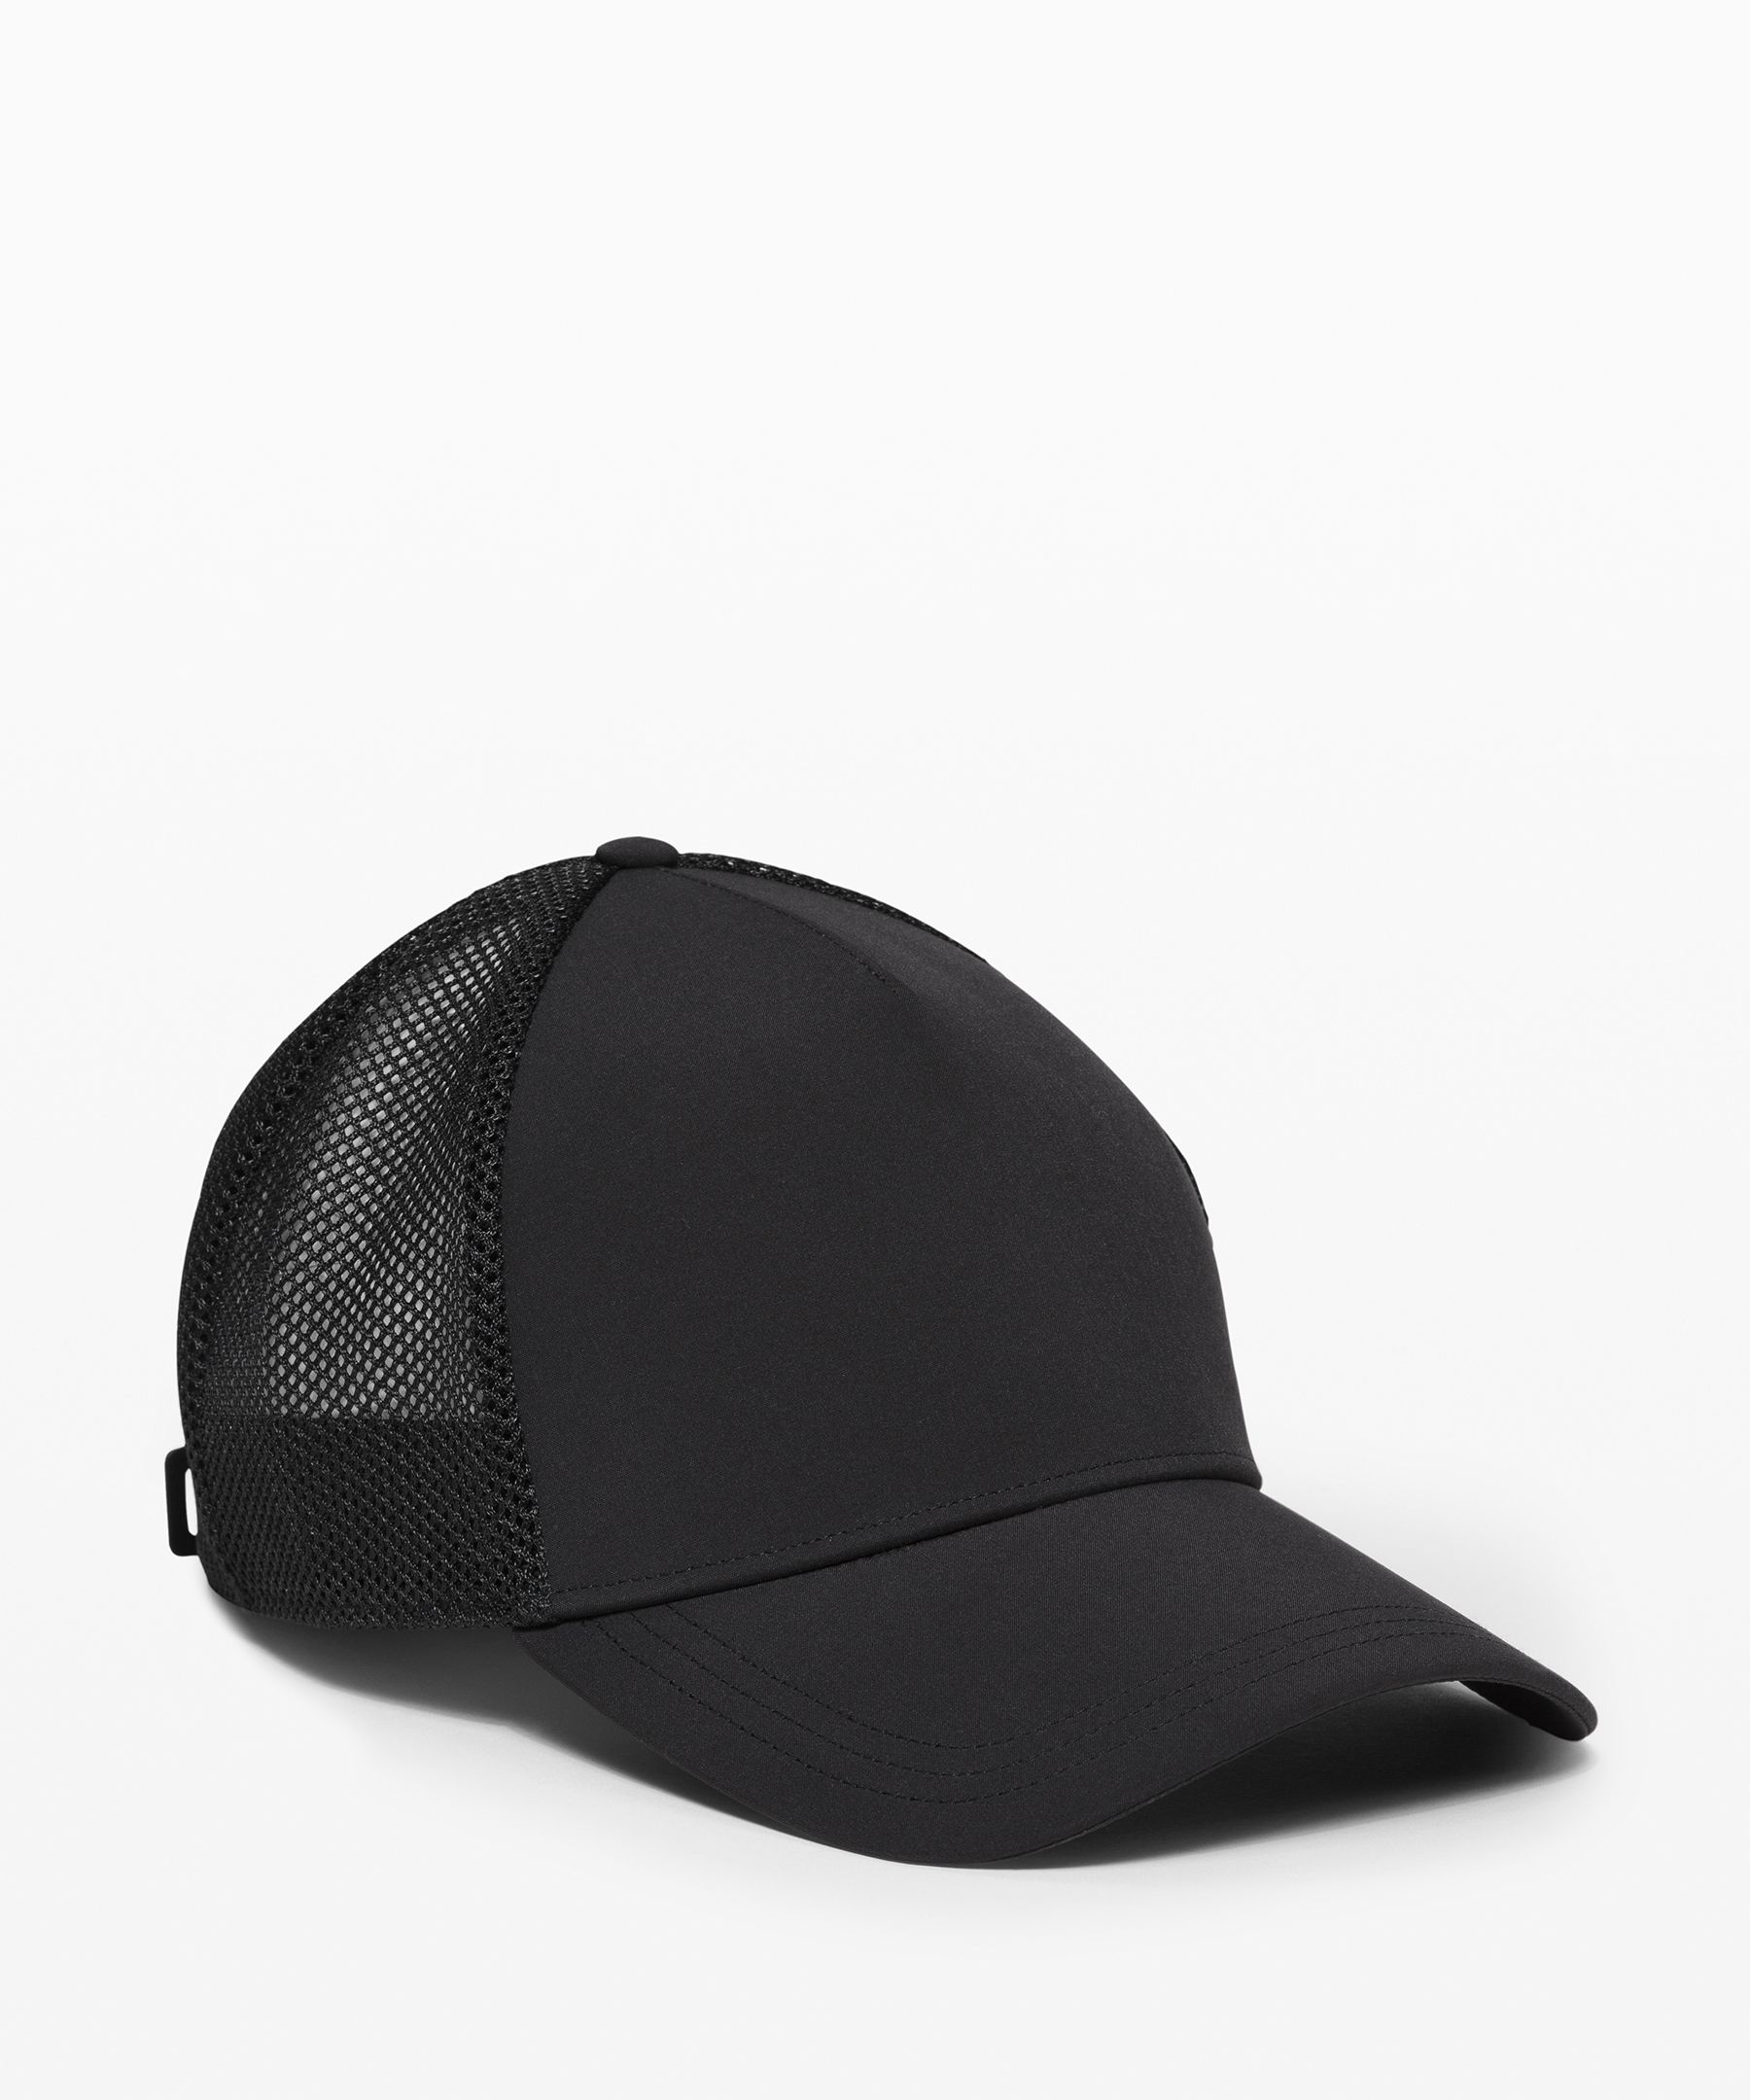 lululemon black hat